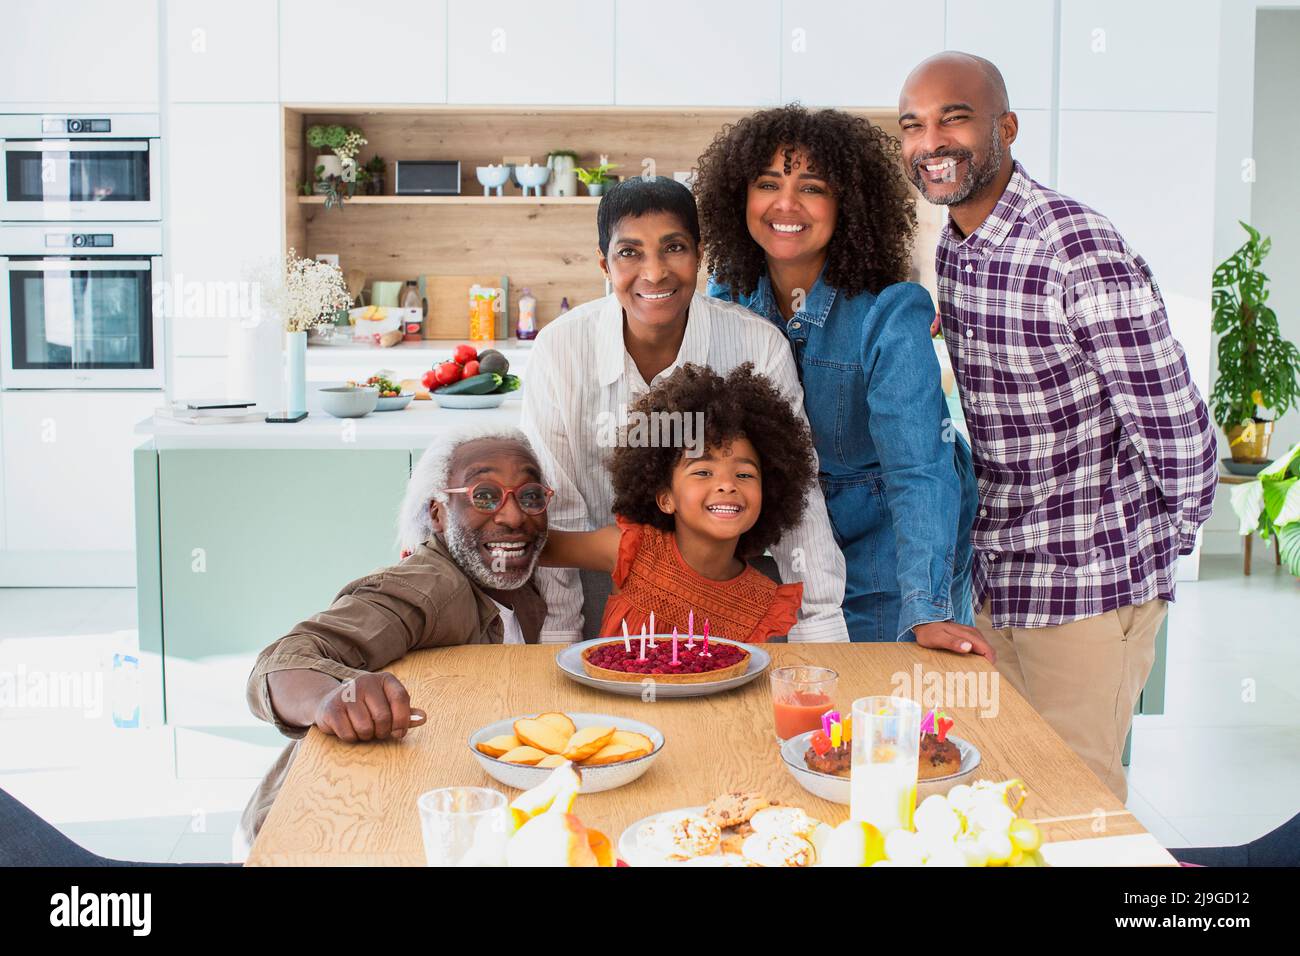 Happy family celebrating birthday at home Stock Photo